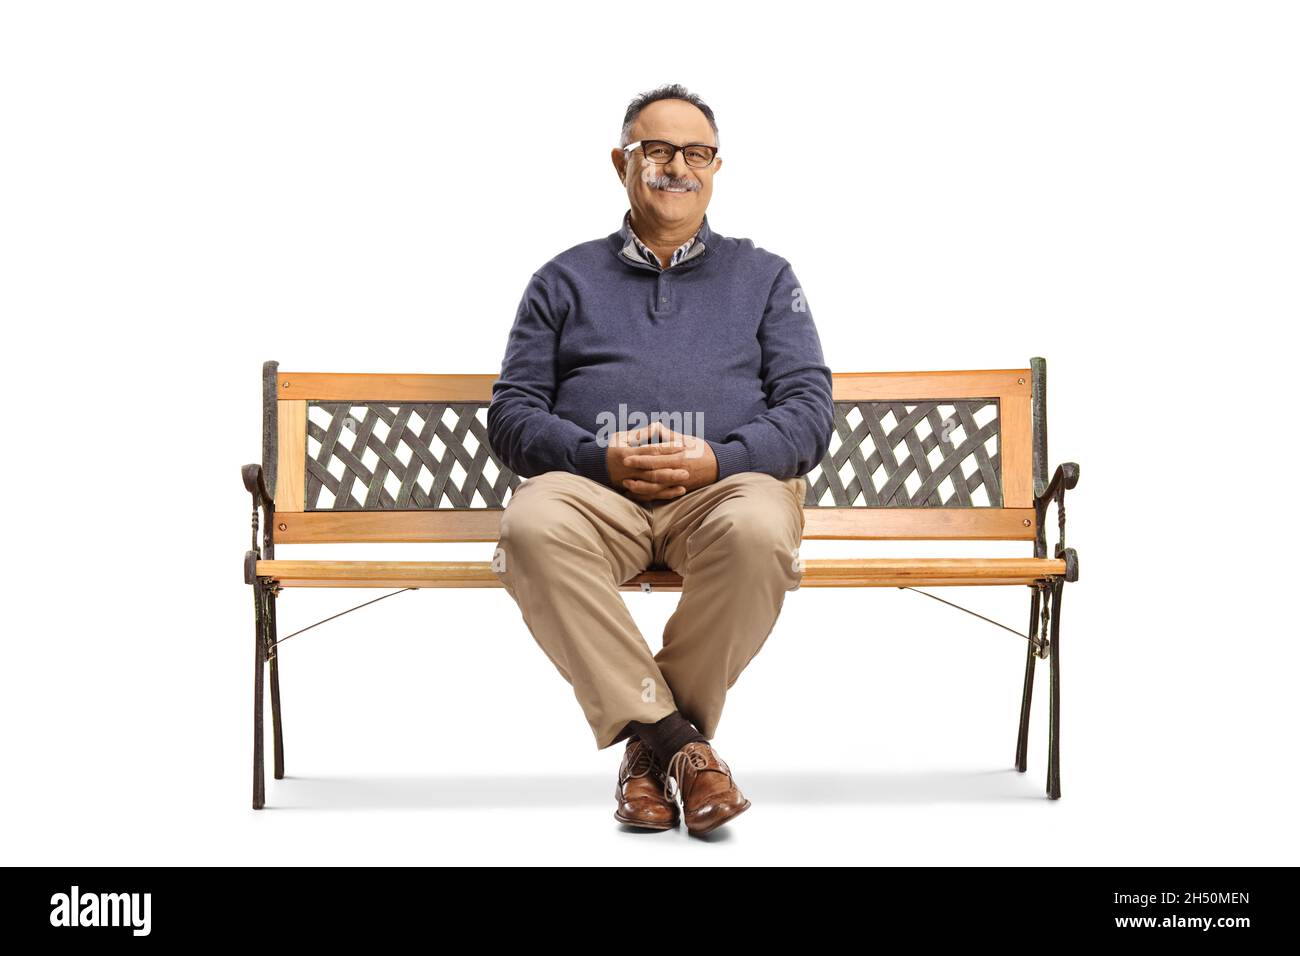 Homme mûr souriant avec des lunettes assises sur un banc isolé sur fond blanc Banque D'Images